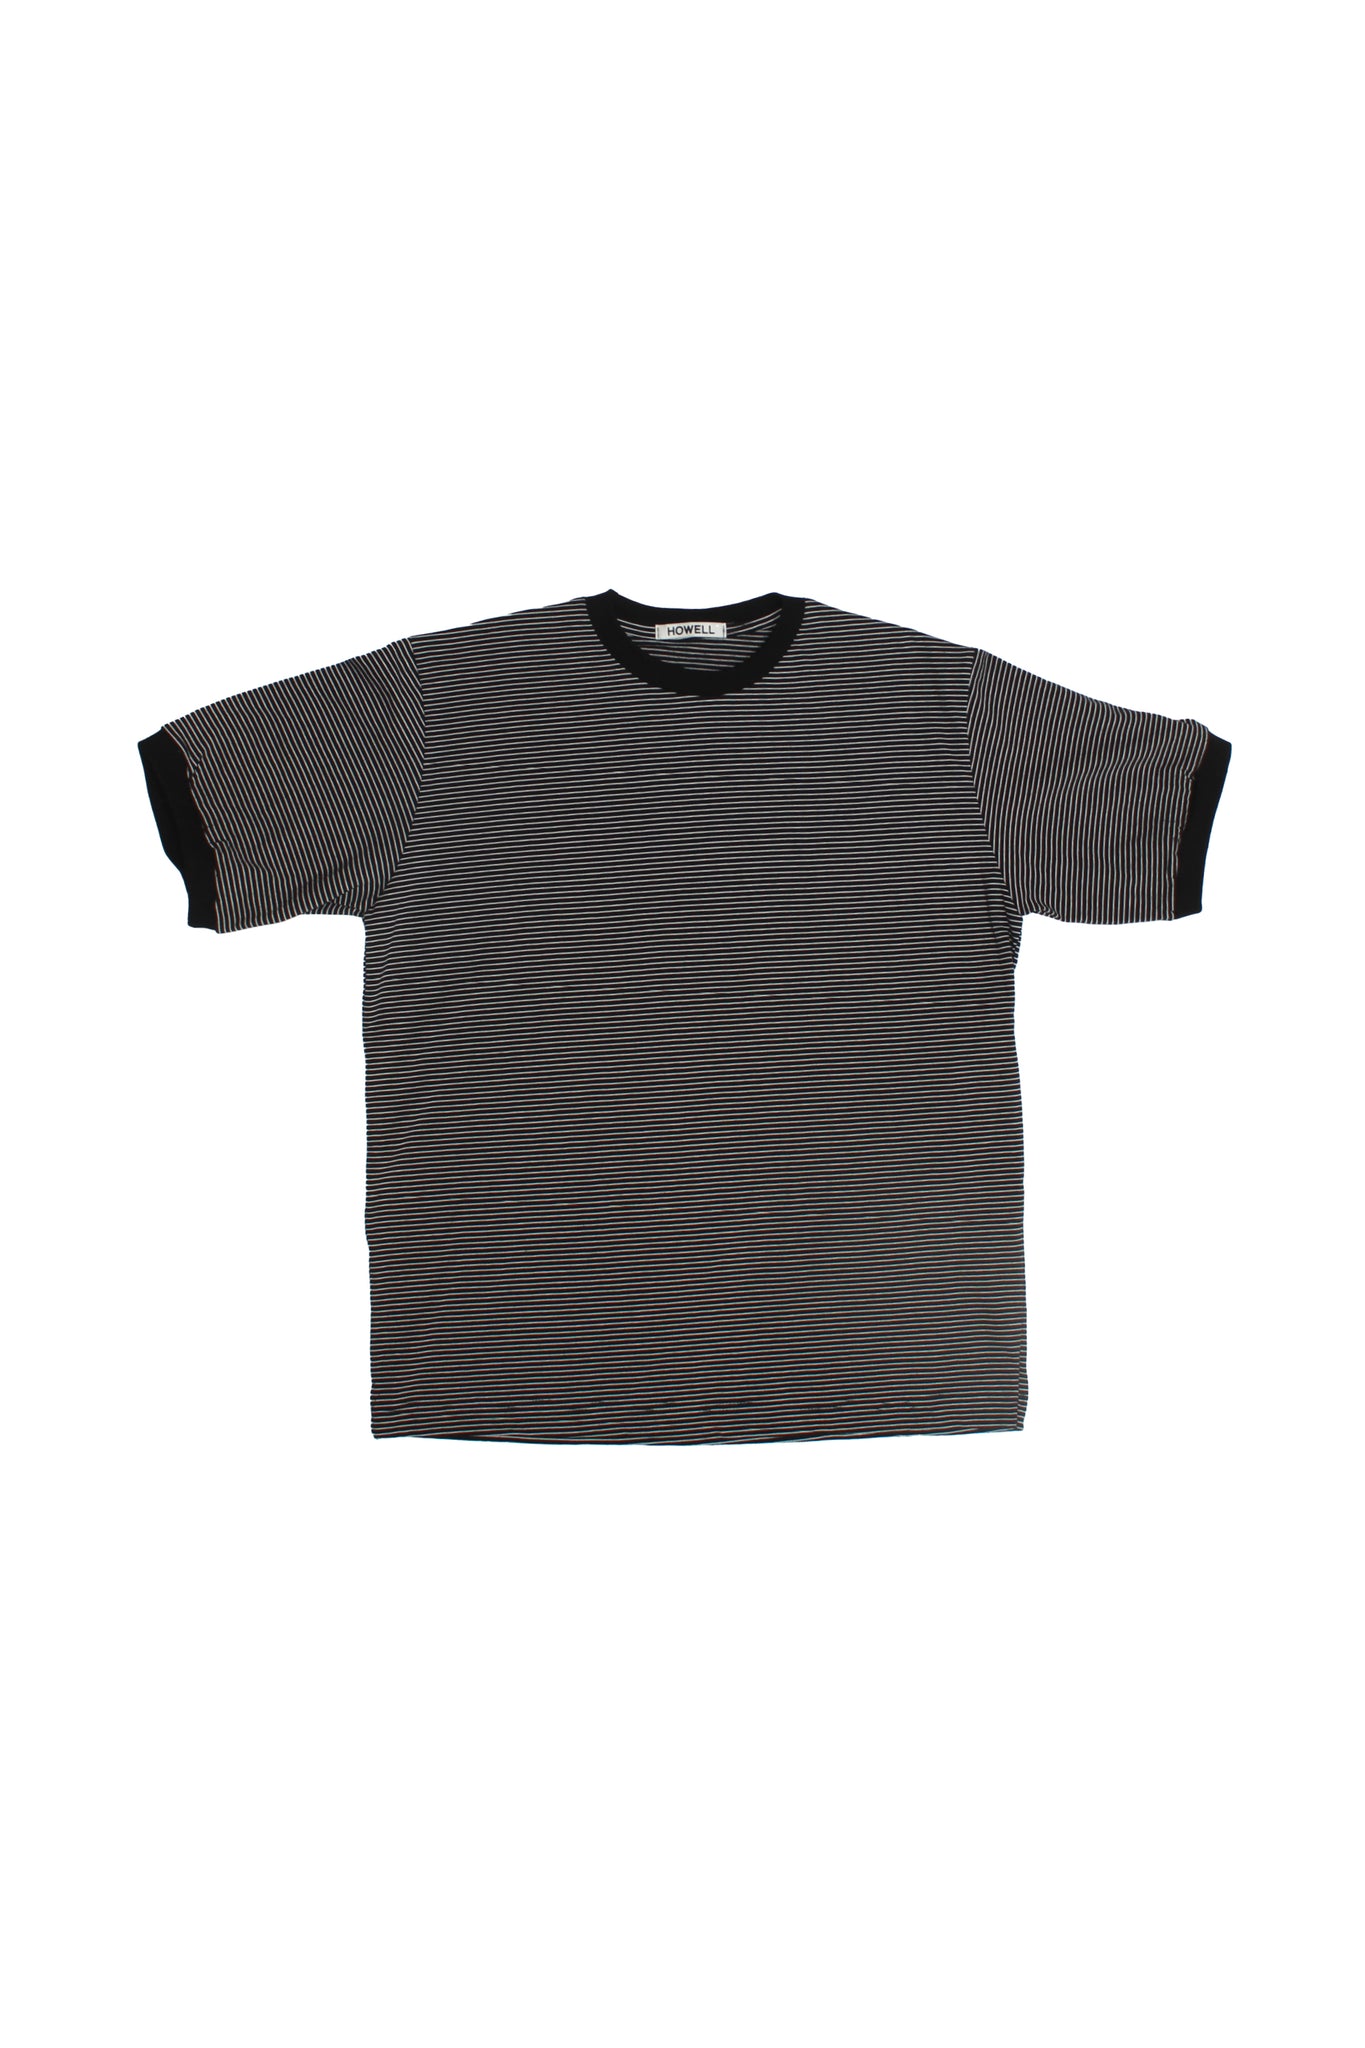 Danto Stripe T-Shirts in Black